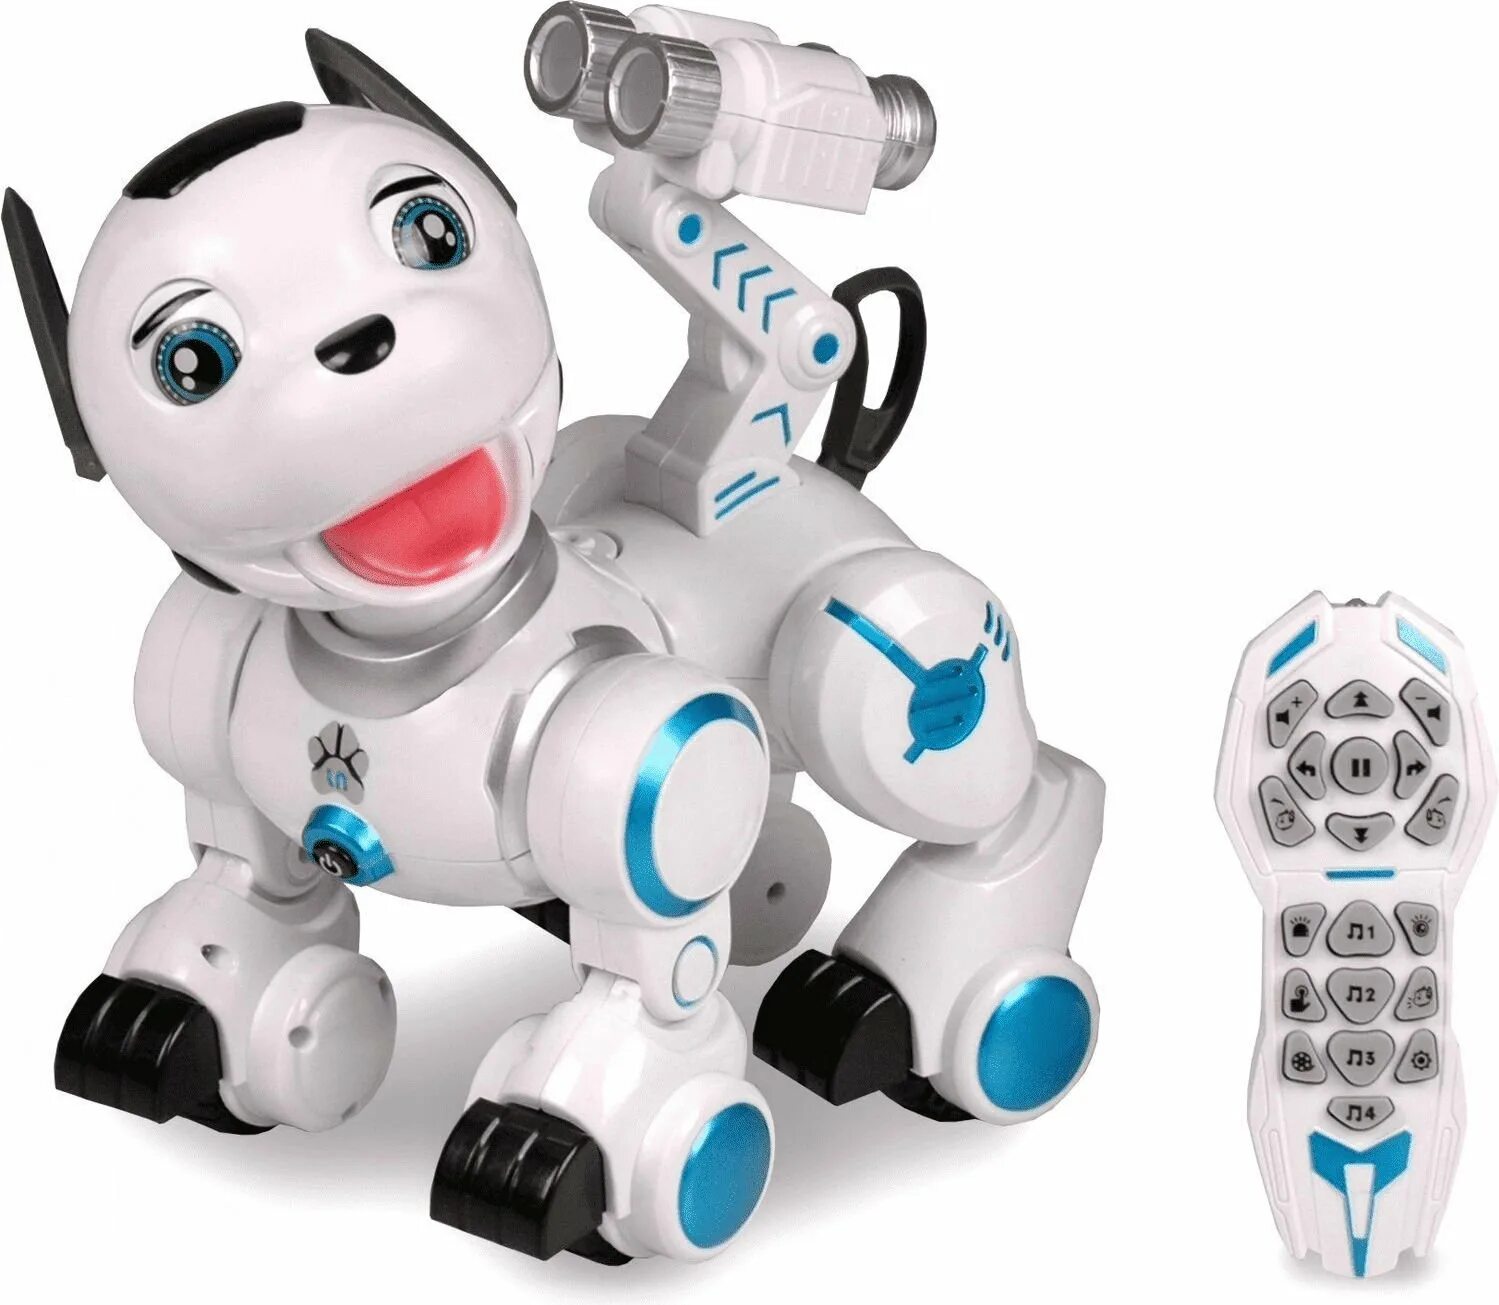 Купить робота на пульте. Робот на пульте управления. Игрушка робот на пульте управления. Робот детский на пульте управления Yogo. Робот игрушка без пульта.